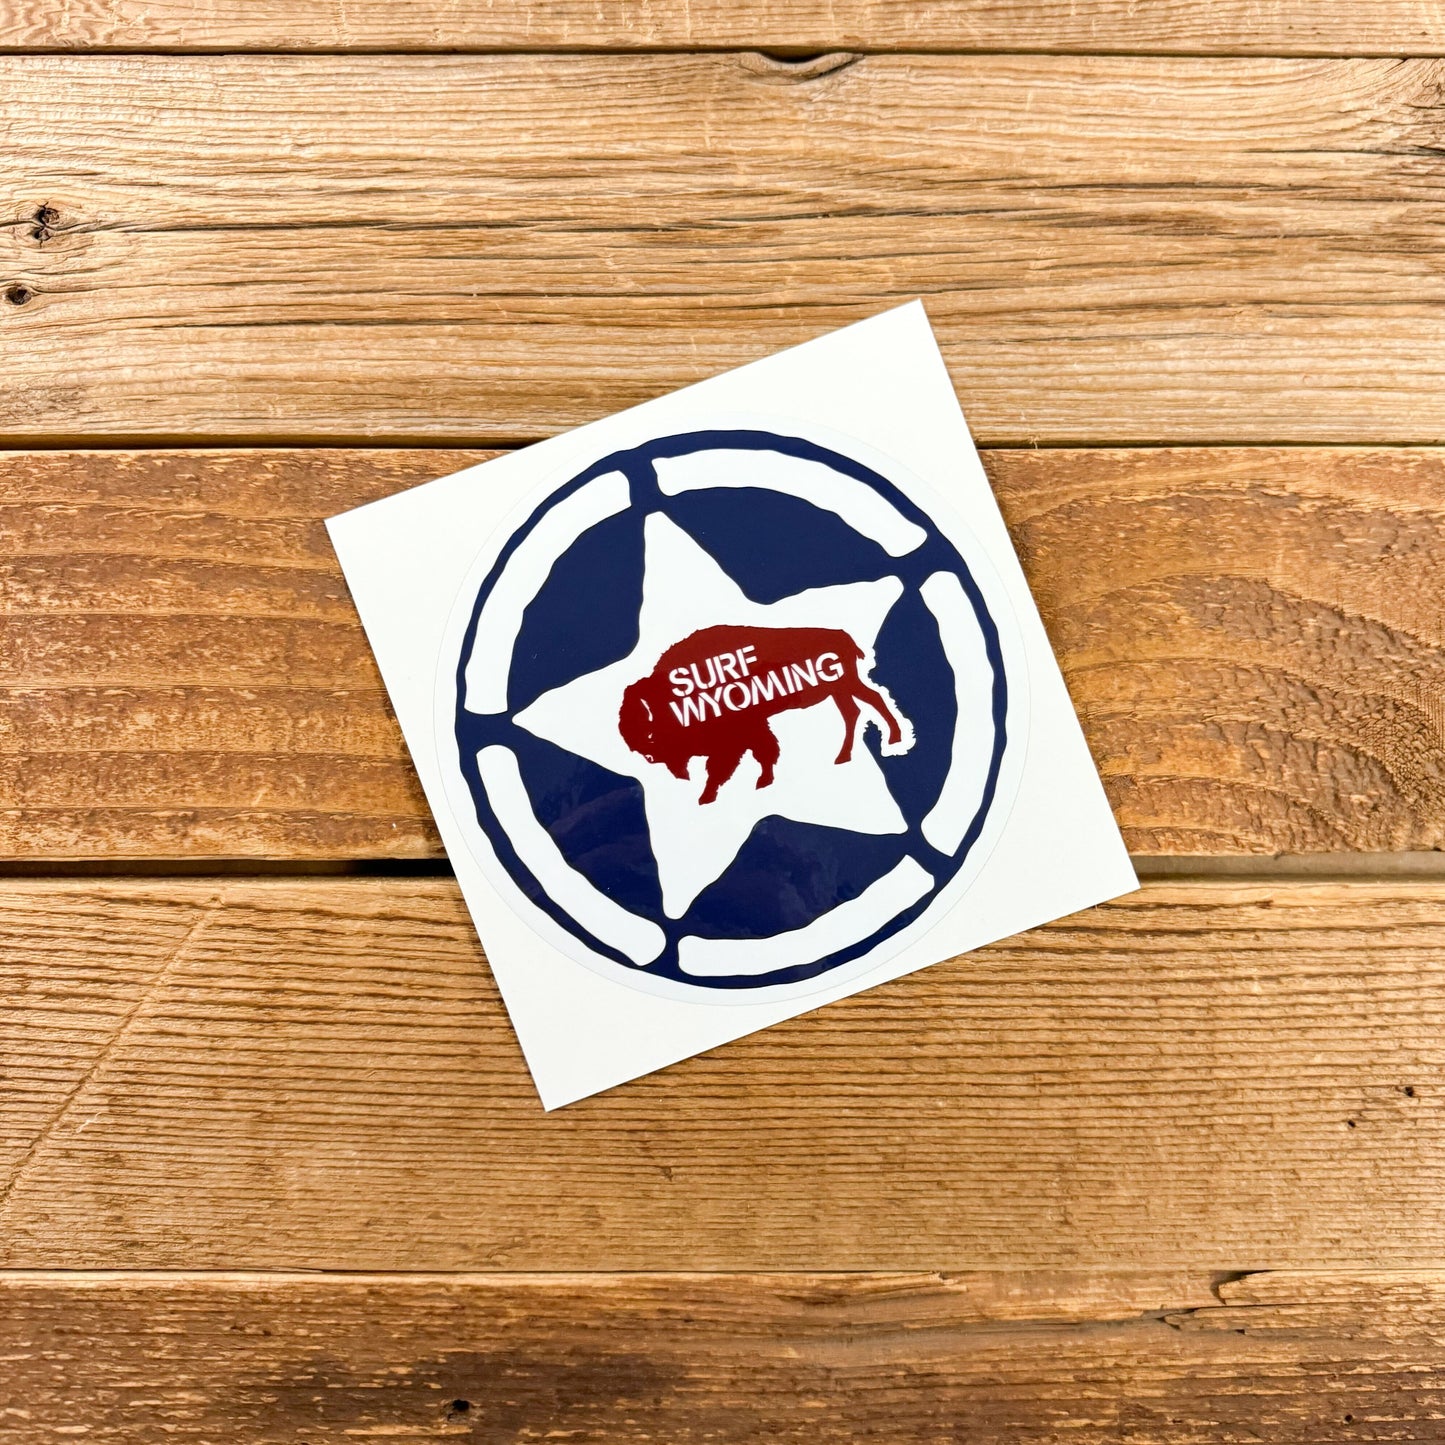 Surf Wyoming® Bison Republic Sticker - Navy